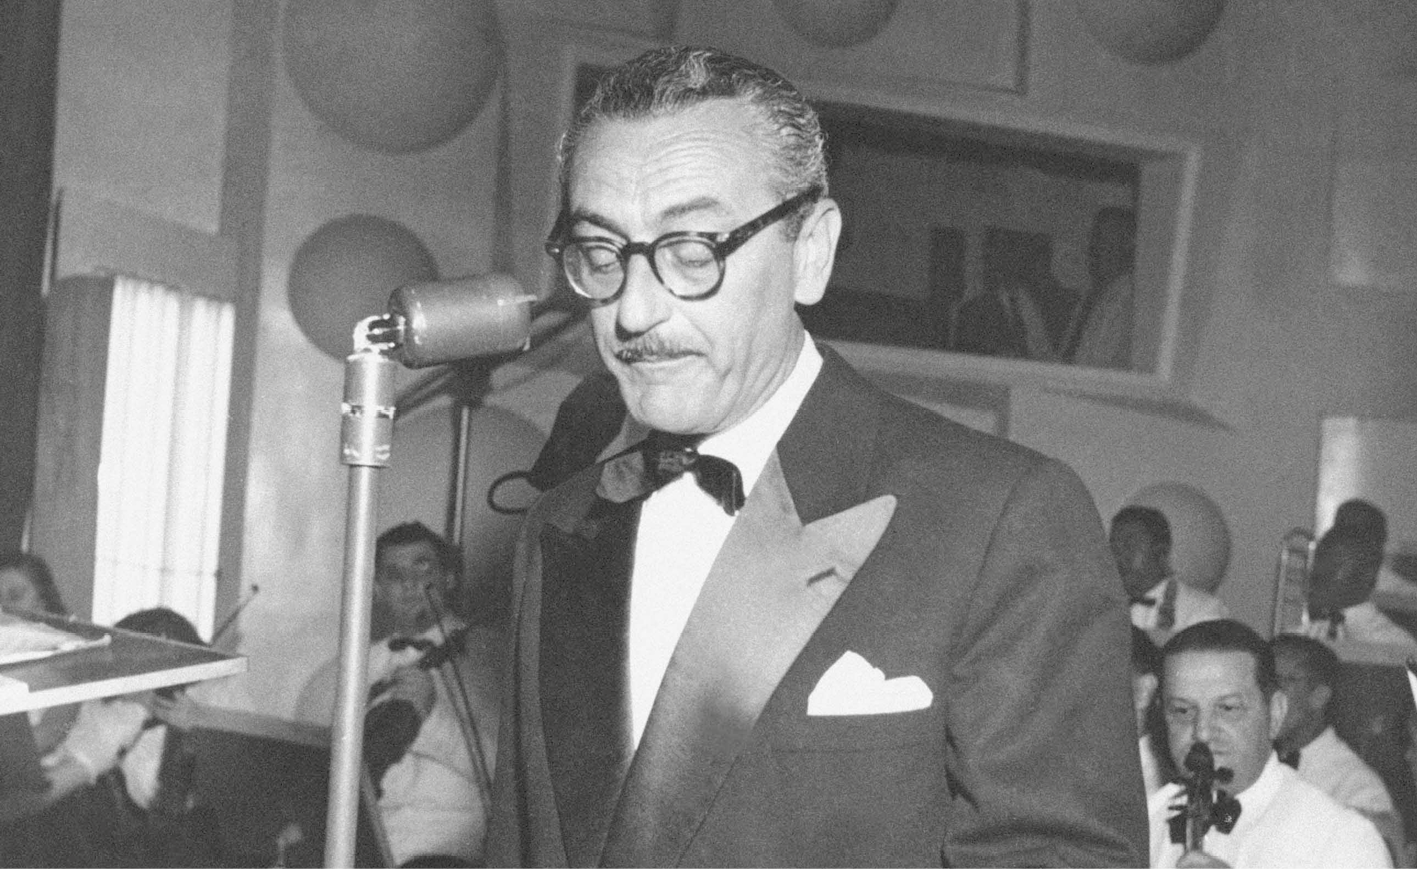 Fotografia em preto e branco. Homem de cabelo curto e óculos de armação arredondada, vestindo camisa, gravata e paletó. Está em frente a um microfone.